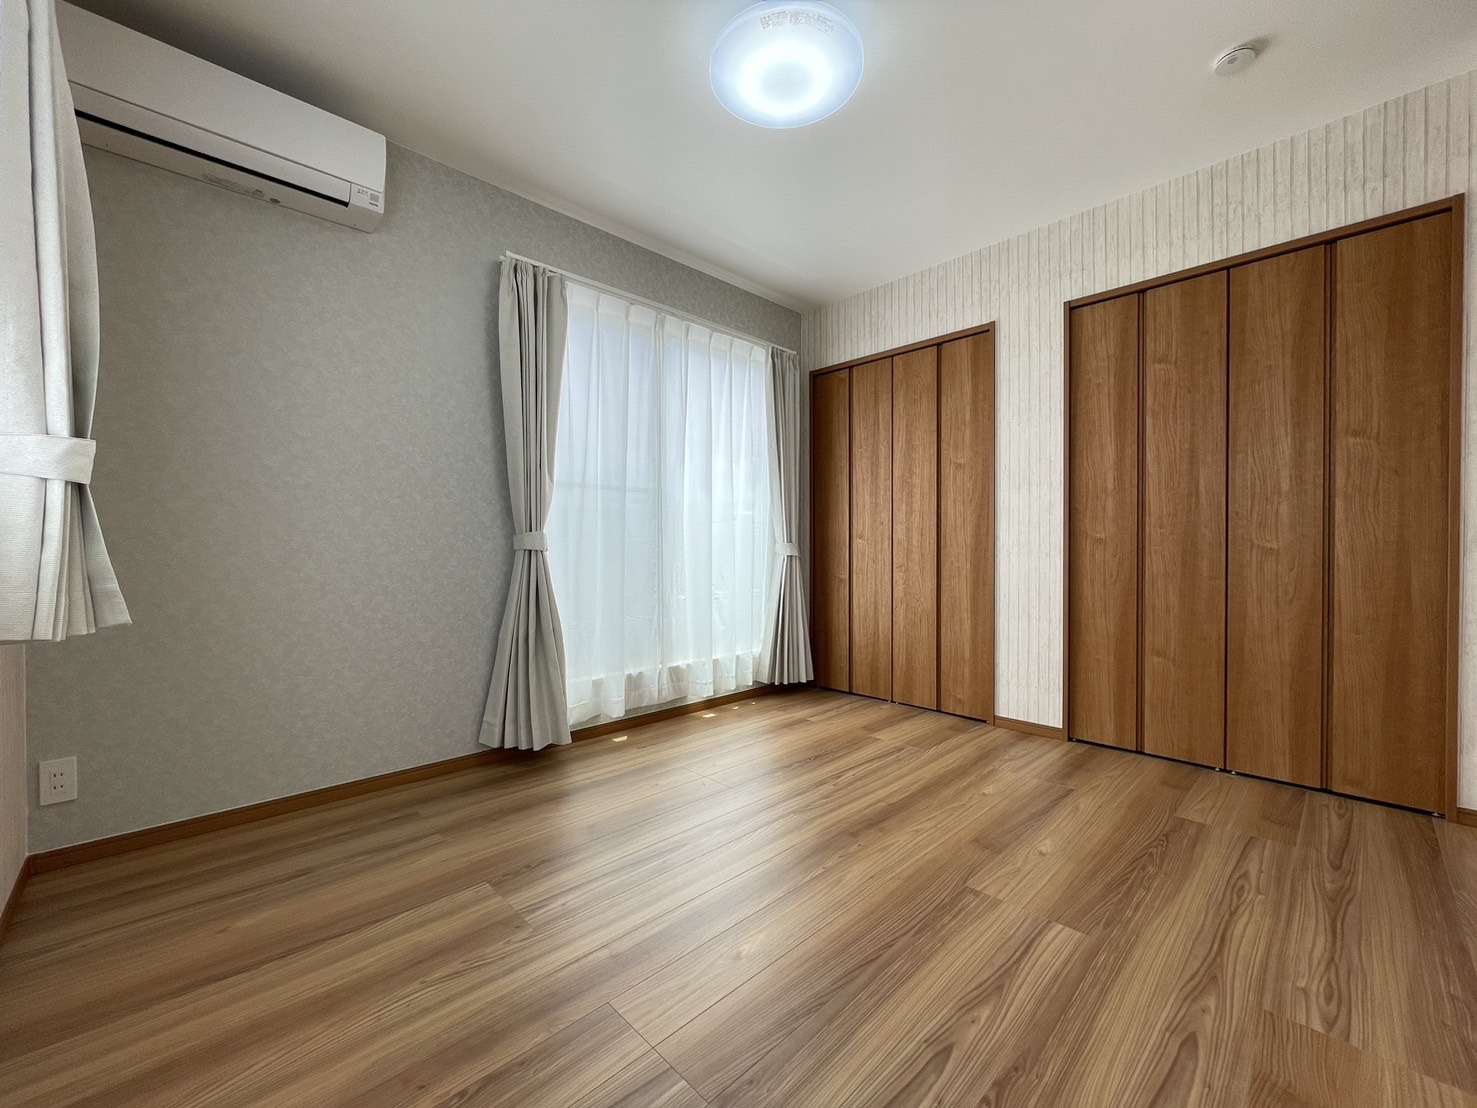 Room1(6.0帖)
・二面採光でとっても明るいお部屋です！
・クローゼットが2つあるのでご夫婦で分けたり、季節で分けたりすることが出来ます。